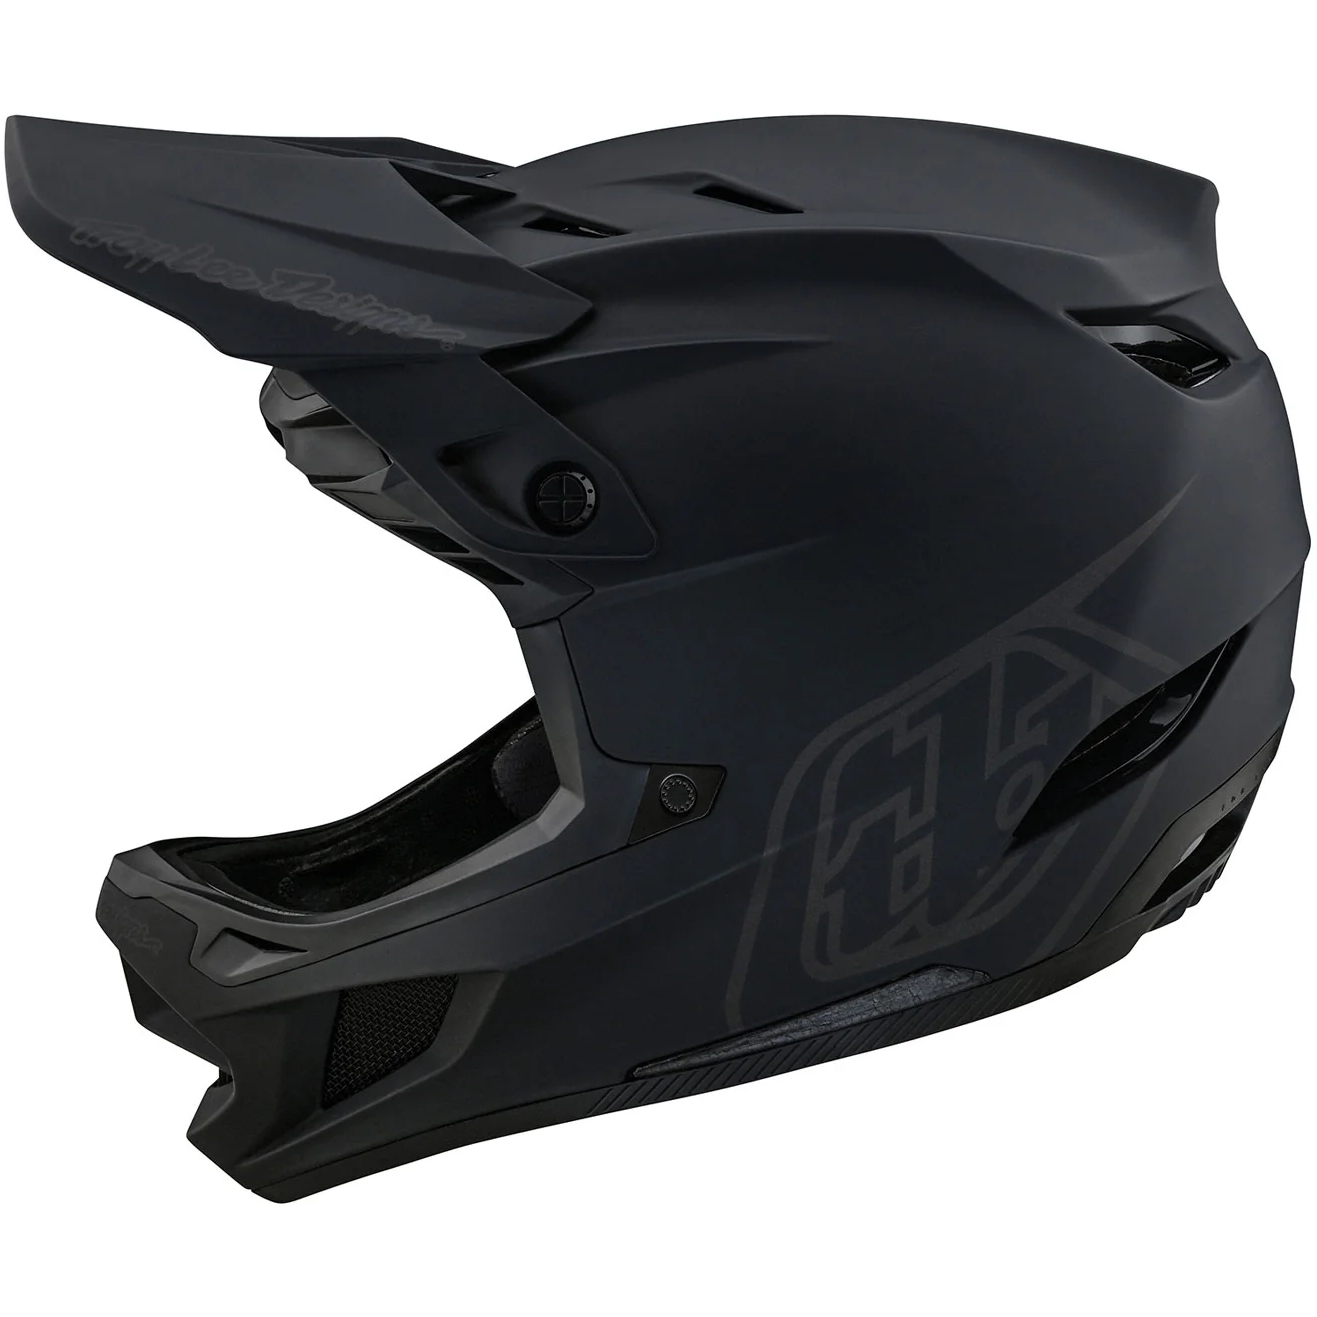 Productfoto van Troy Lee Designs D4 Composite MIPS Helm - Stealth Black